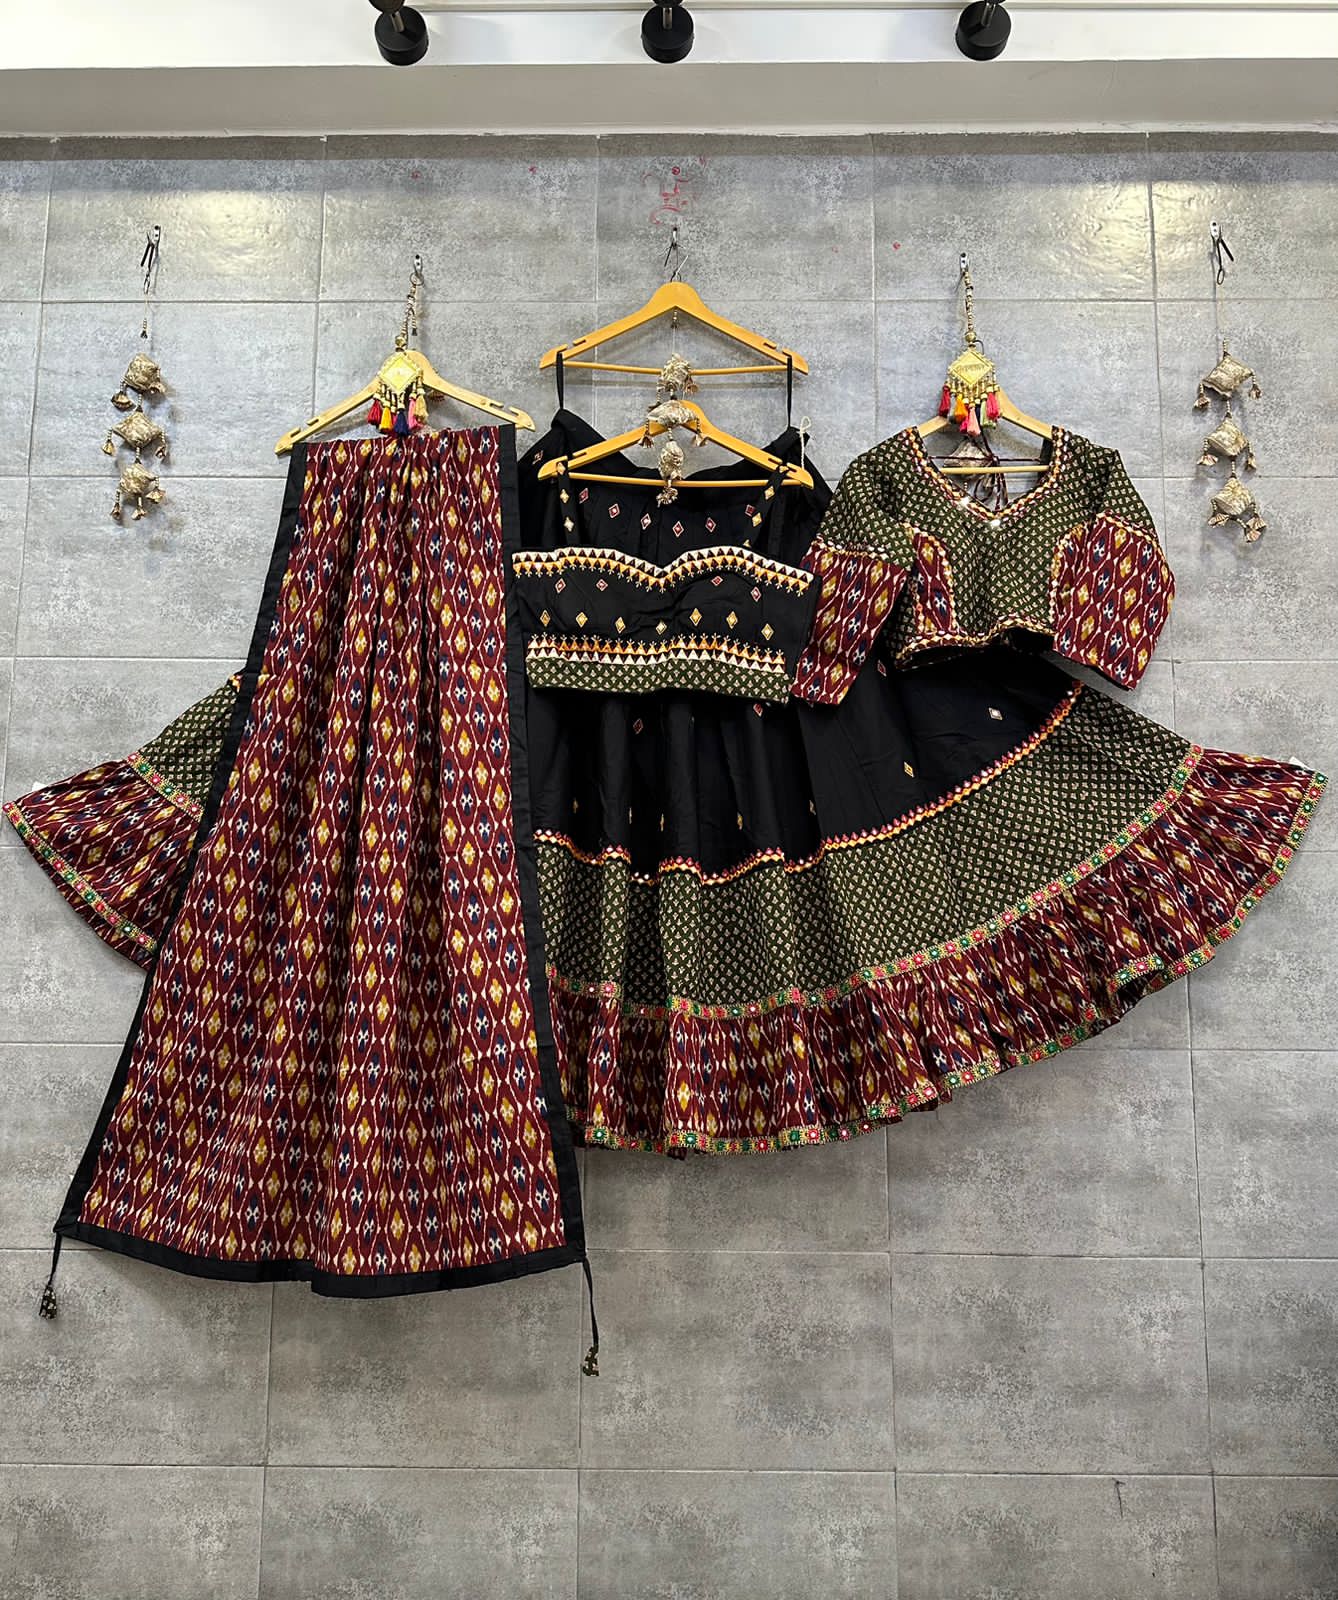 Rajasthani Banarasi Bandhej Ghatchola Mirror Work Lehenga, Nr, Kml at Rs  1575.00 | Subhash Chowk | Sikar| ID: 2850228429362